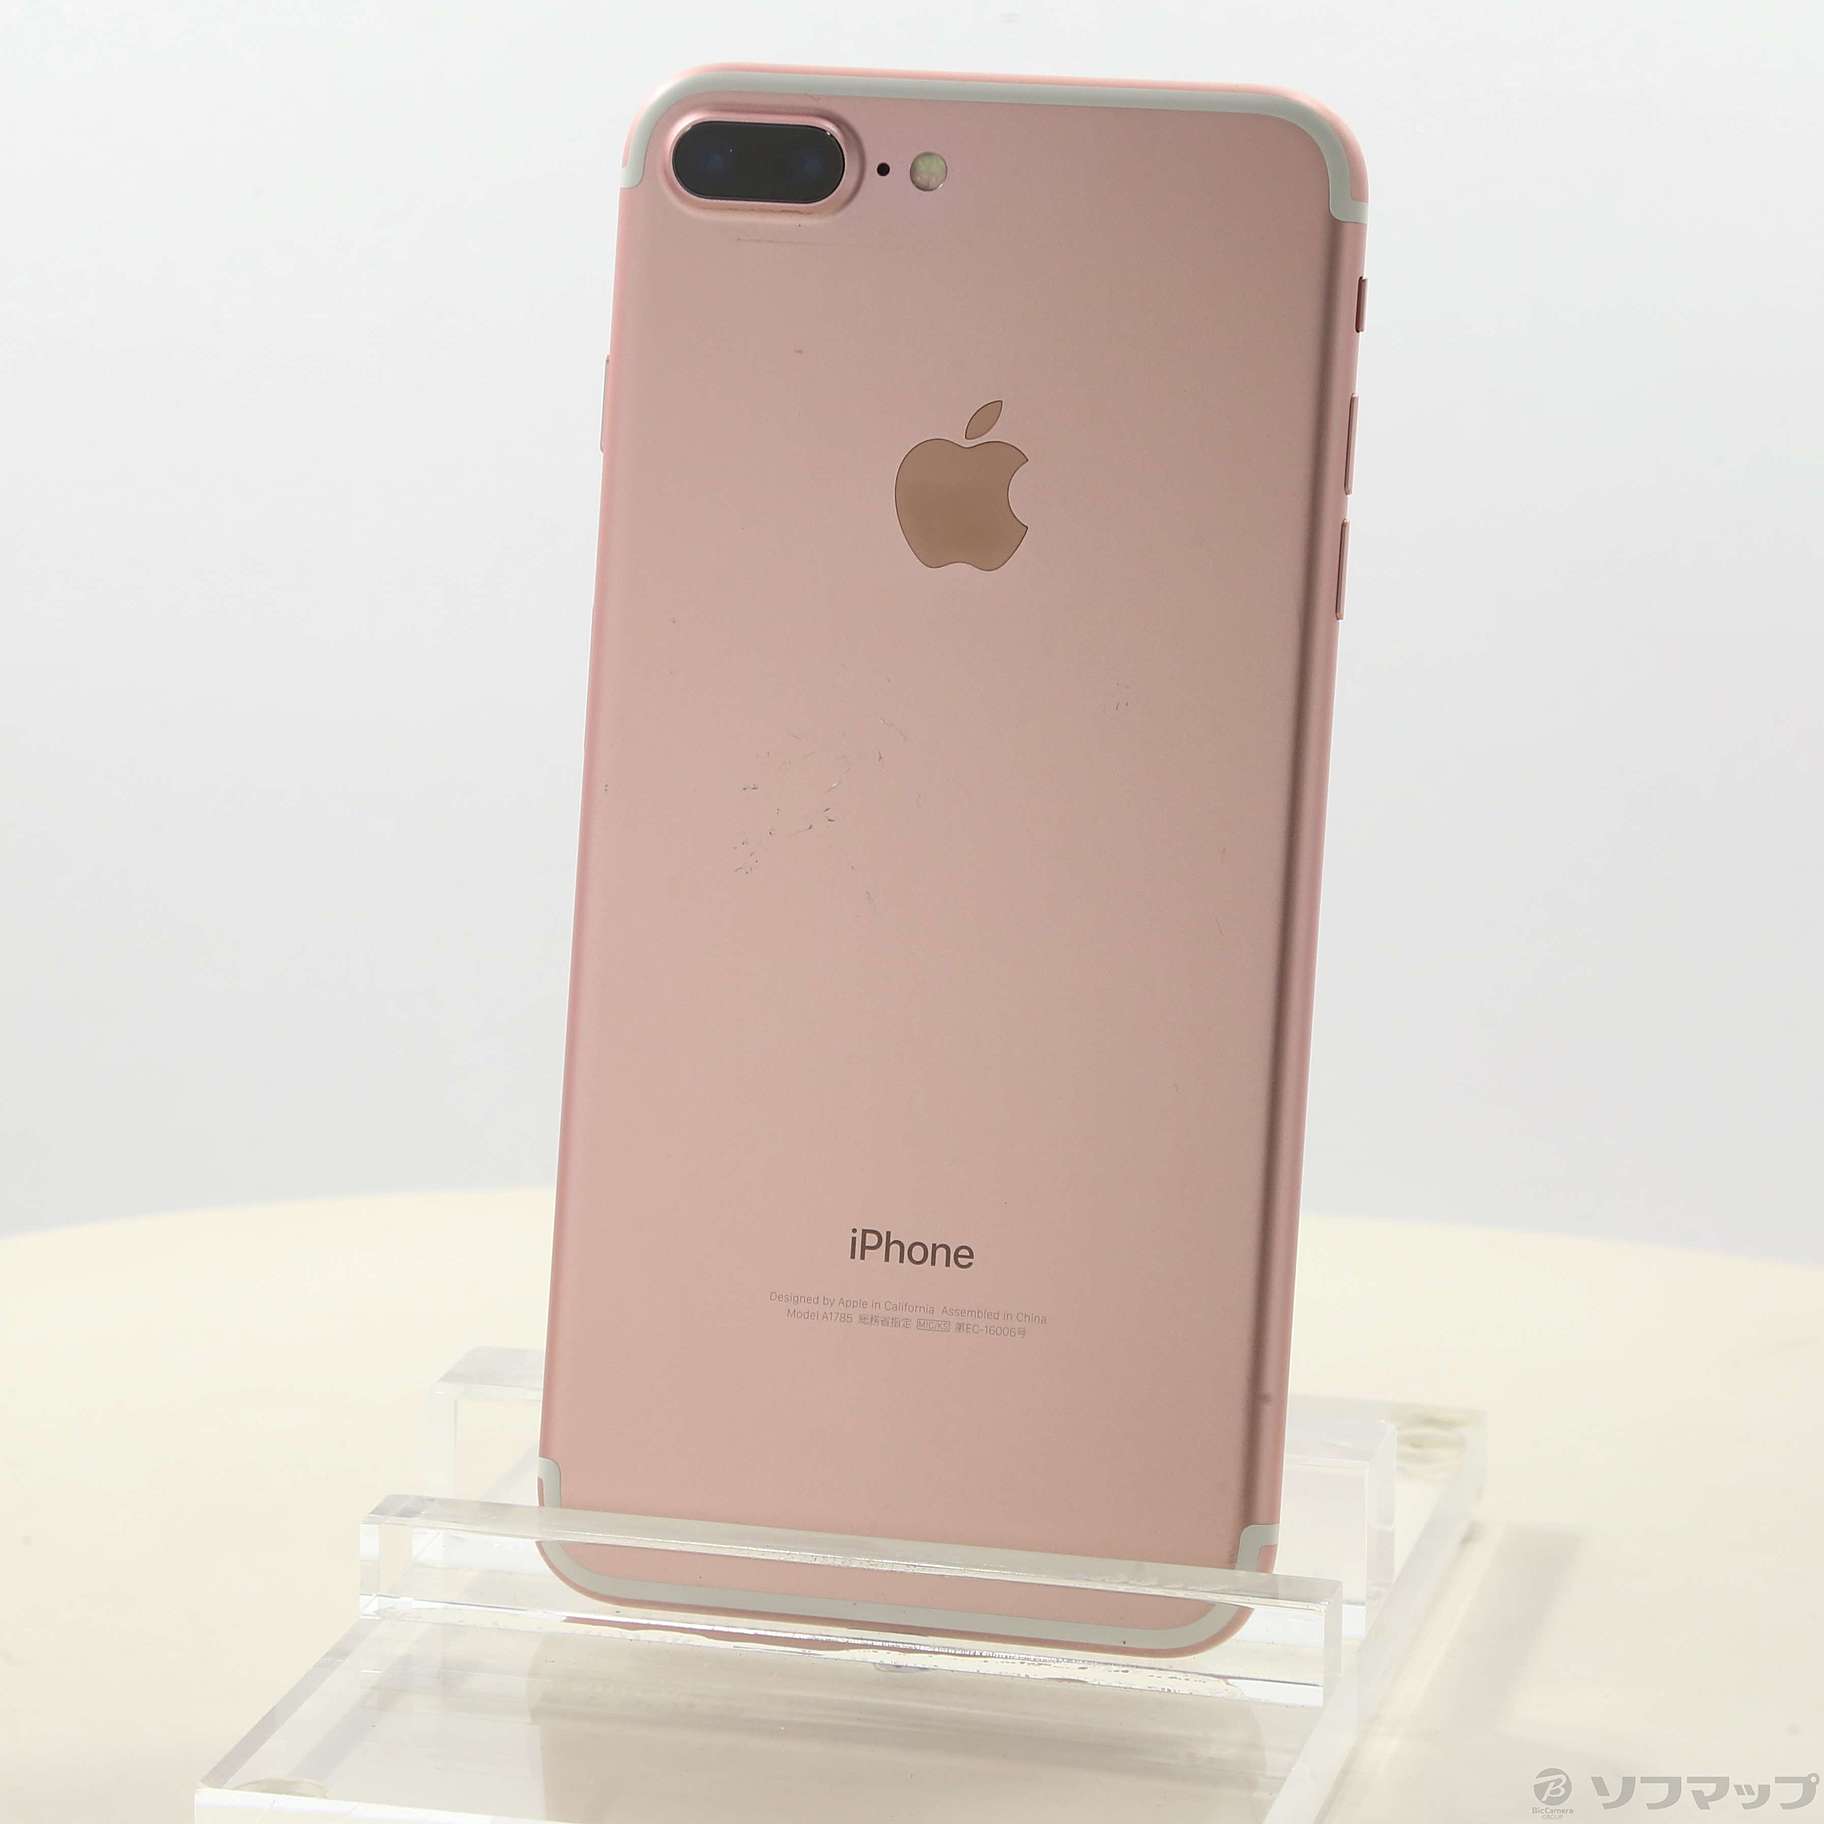 iPhone 7 Plus Rose Gold 128GB SIMフリー - スマートフォン本体